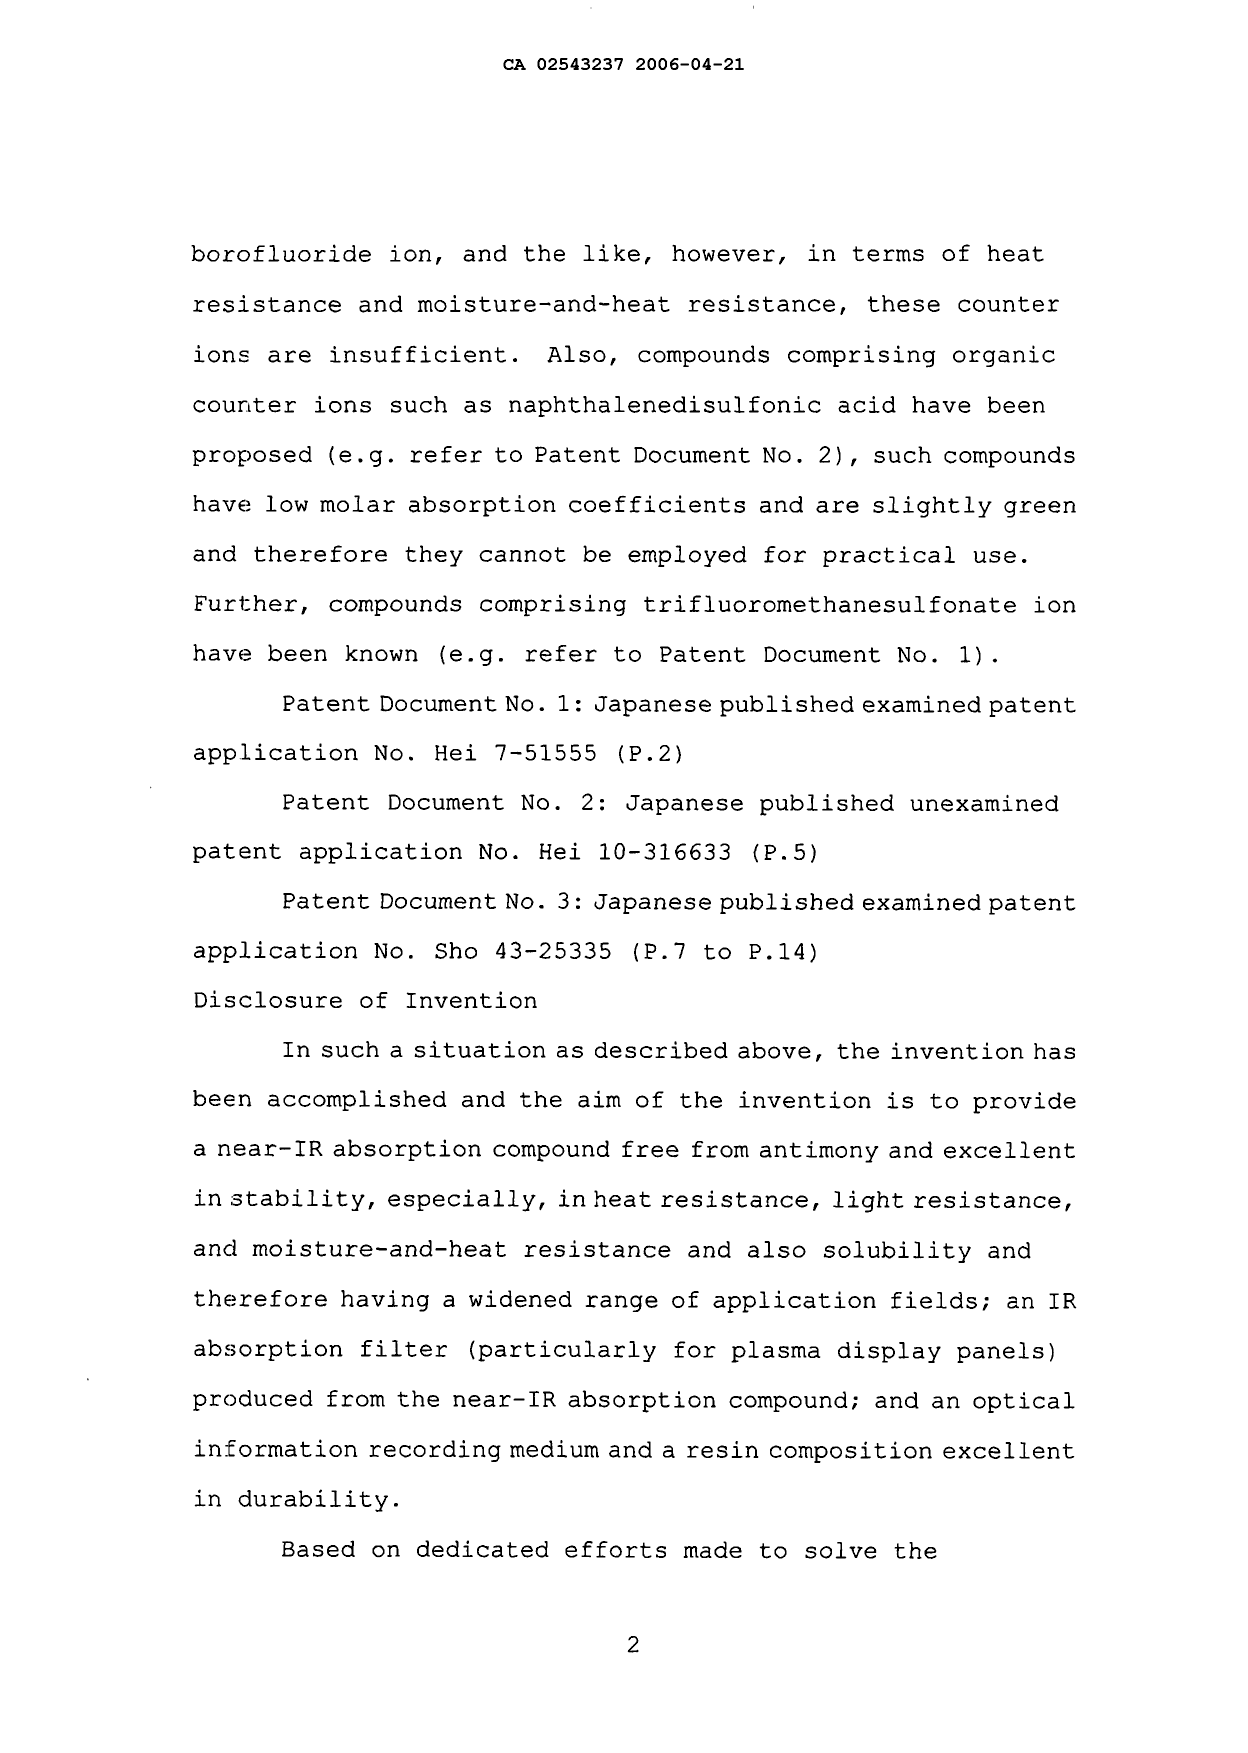 Canadian Patent Document 2543237. Description 20060421. Image 2 of 49